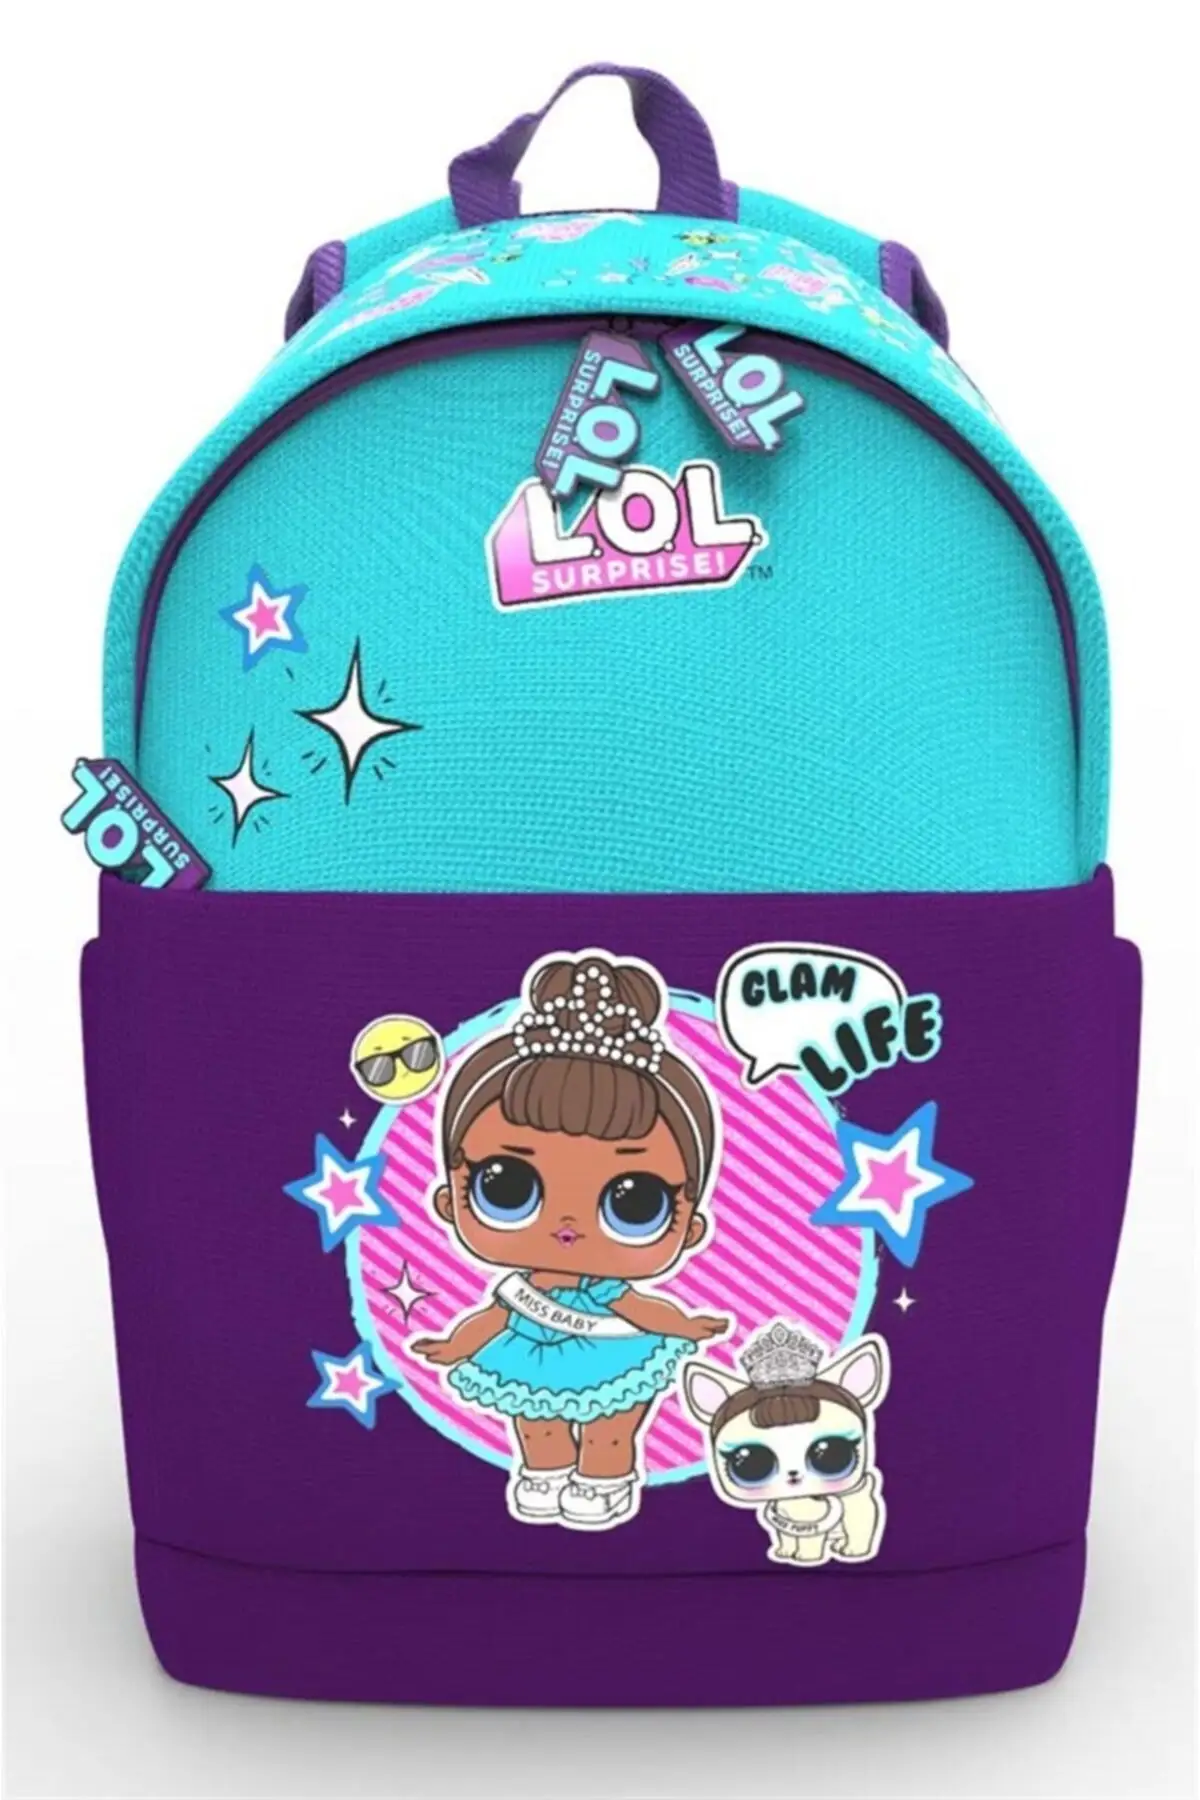 Lol Kindergarten Bag Blue